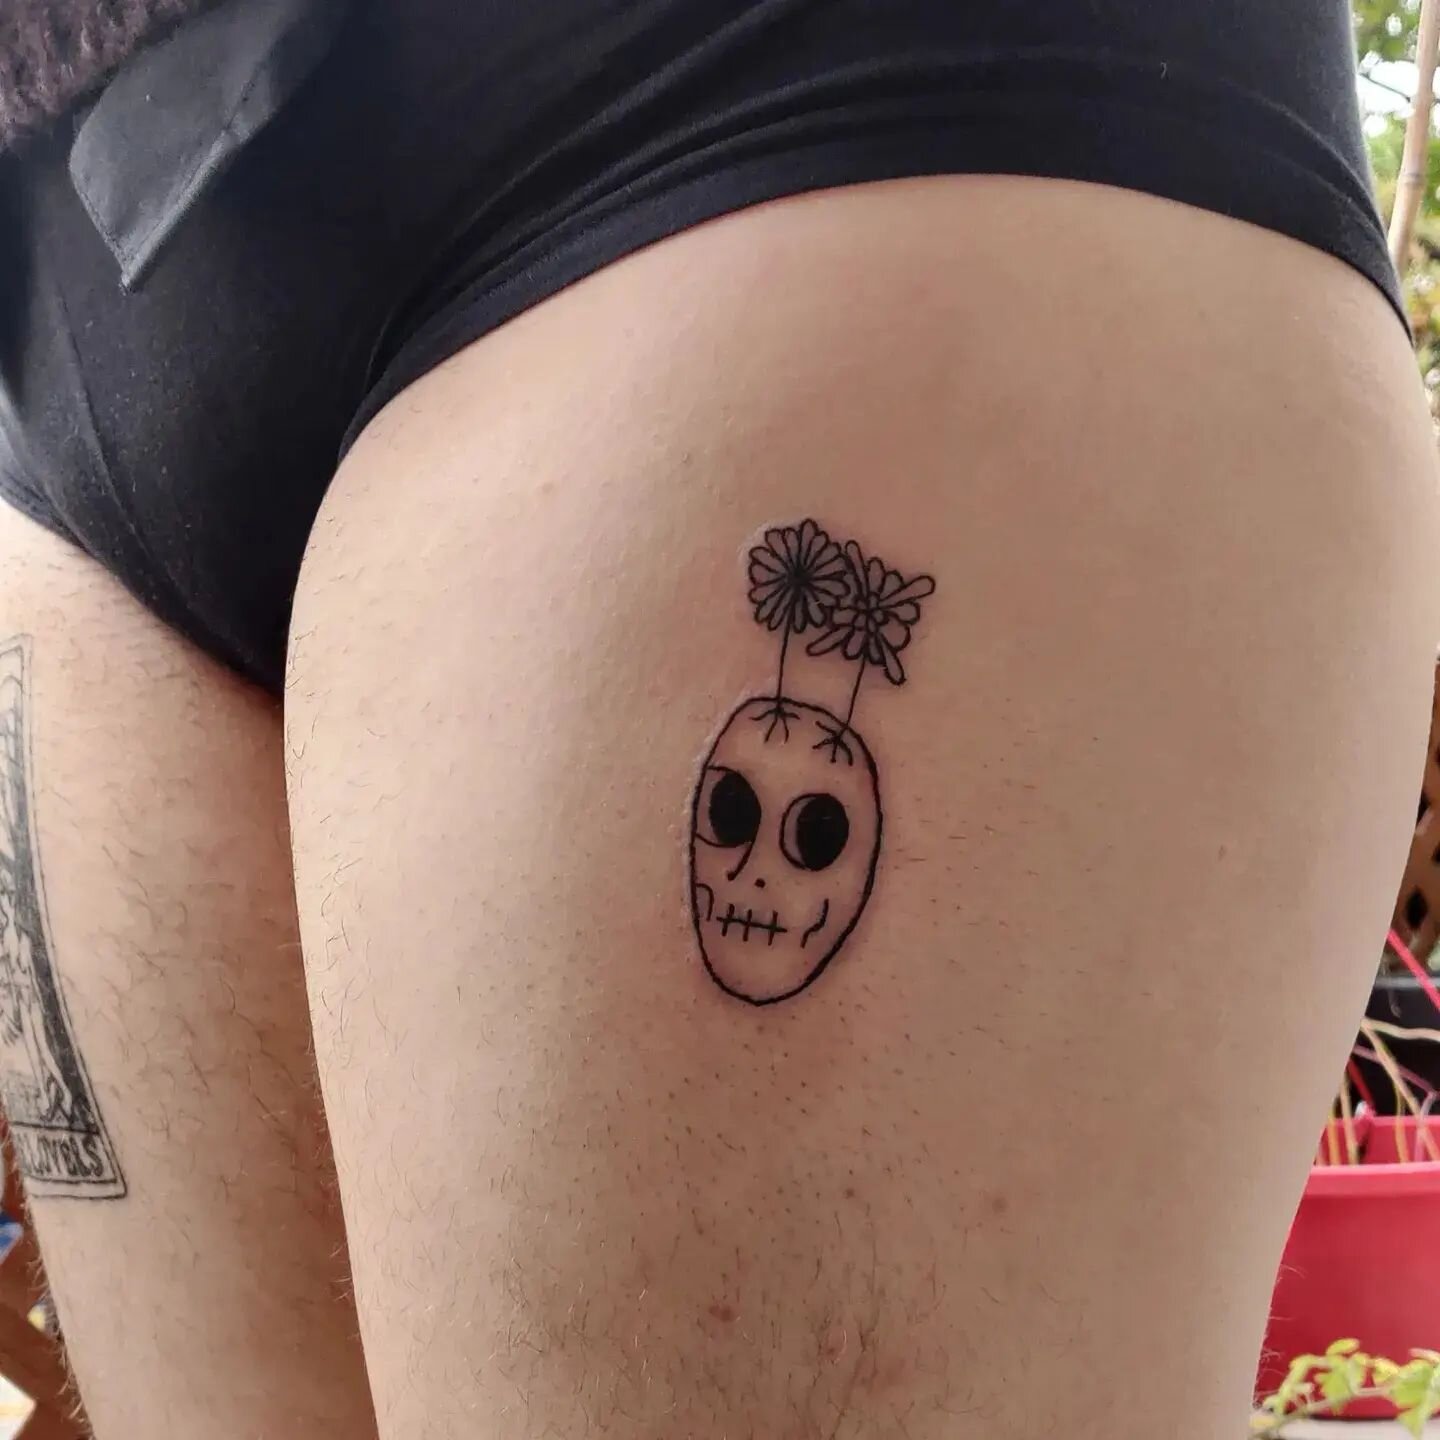 blooming skull for @mcsn2000 💀🌷
&bull;
&bull;
&bull;
#tattoo #tattoos #skulltattoo #montrealtattooartist
#montrealtattoo #mtltattoo #montrealartist #ink #inked #tattoodesign #linework #babytattooer #simpletattoo #minimalisttattoo #linetattoo